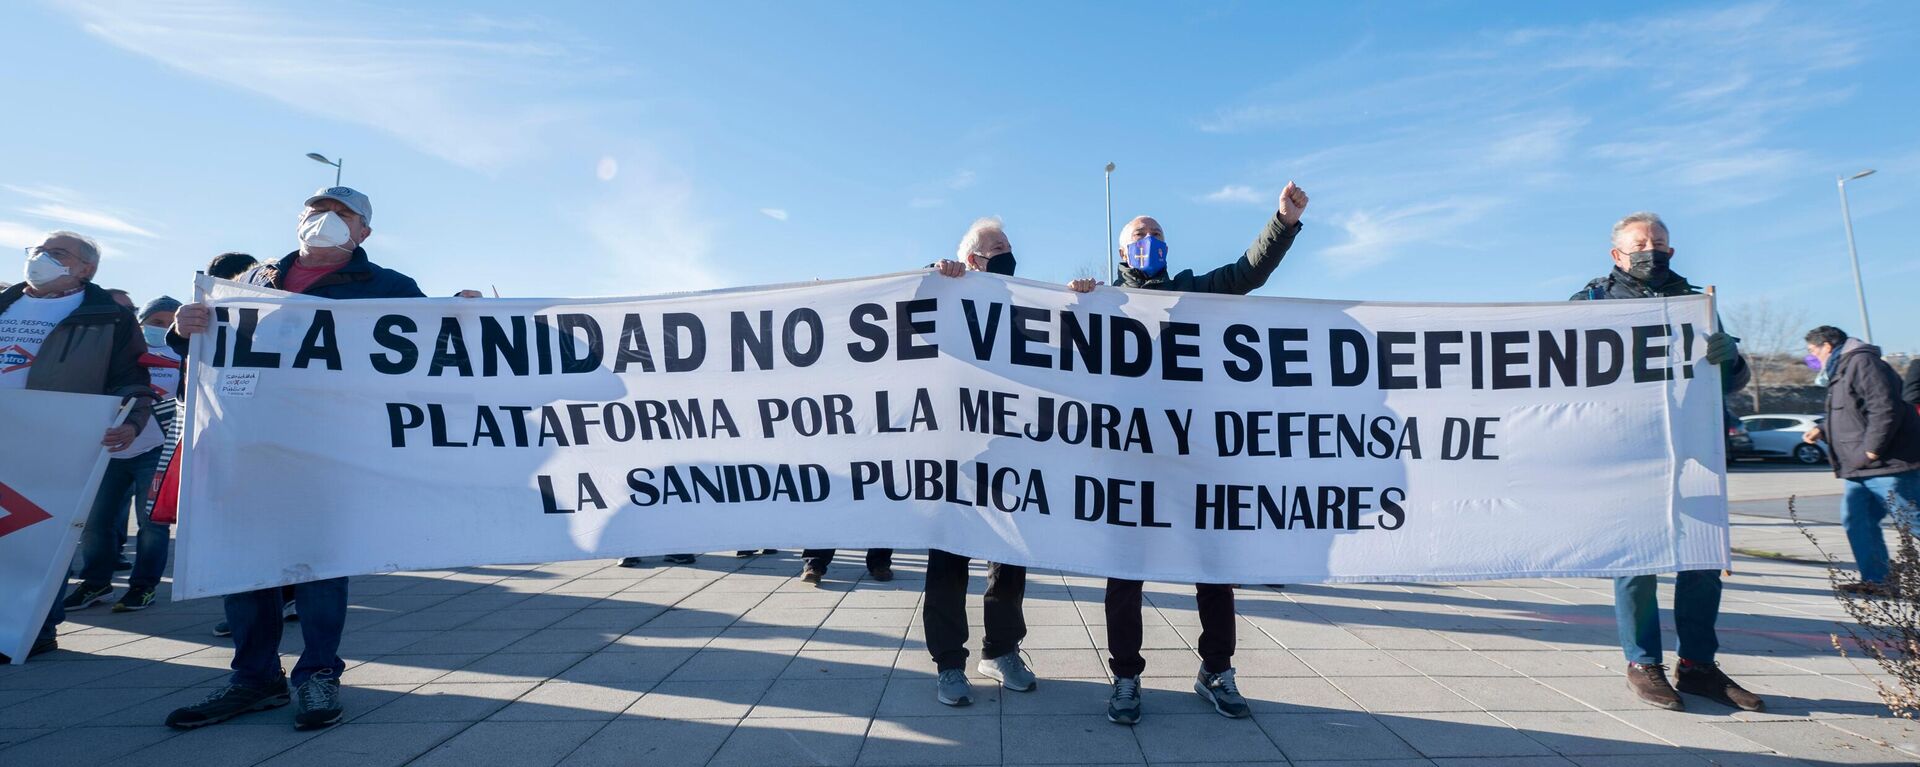 Grupos de personas se manifiestan a favor de la sanidad pública en Madrid. Coslada, Madrid, 18 enero de 2022 - Sputnik Mundo, 1920, 20.01.2022